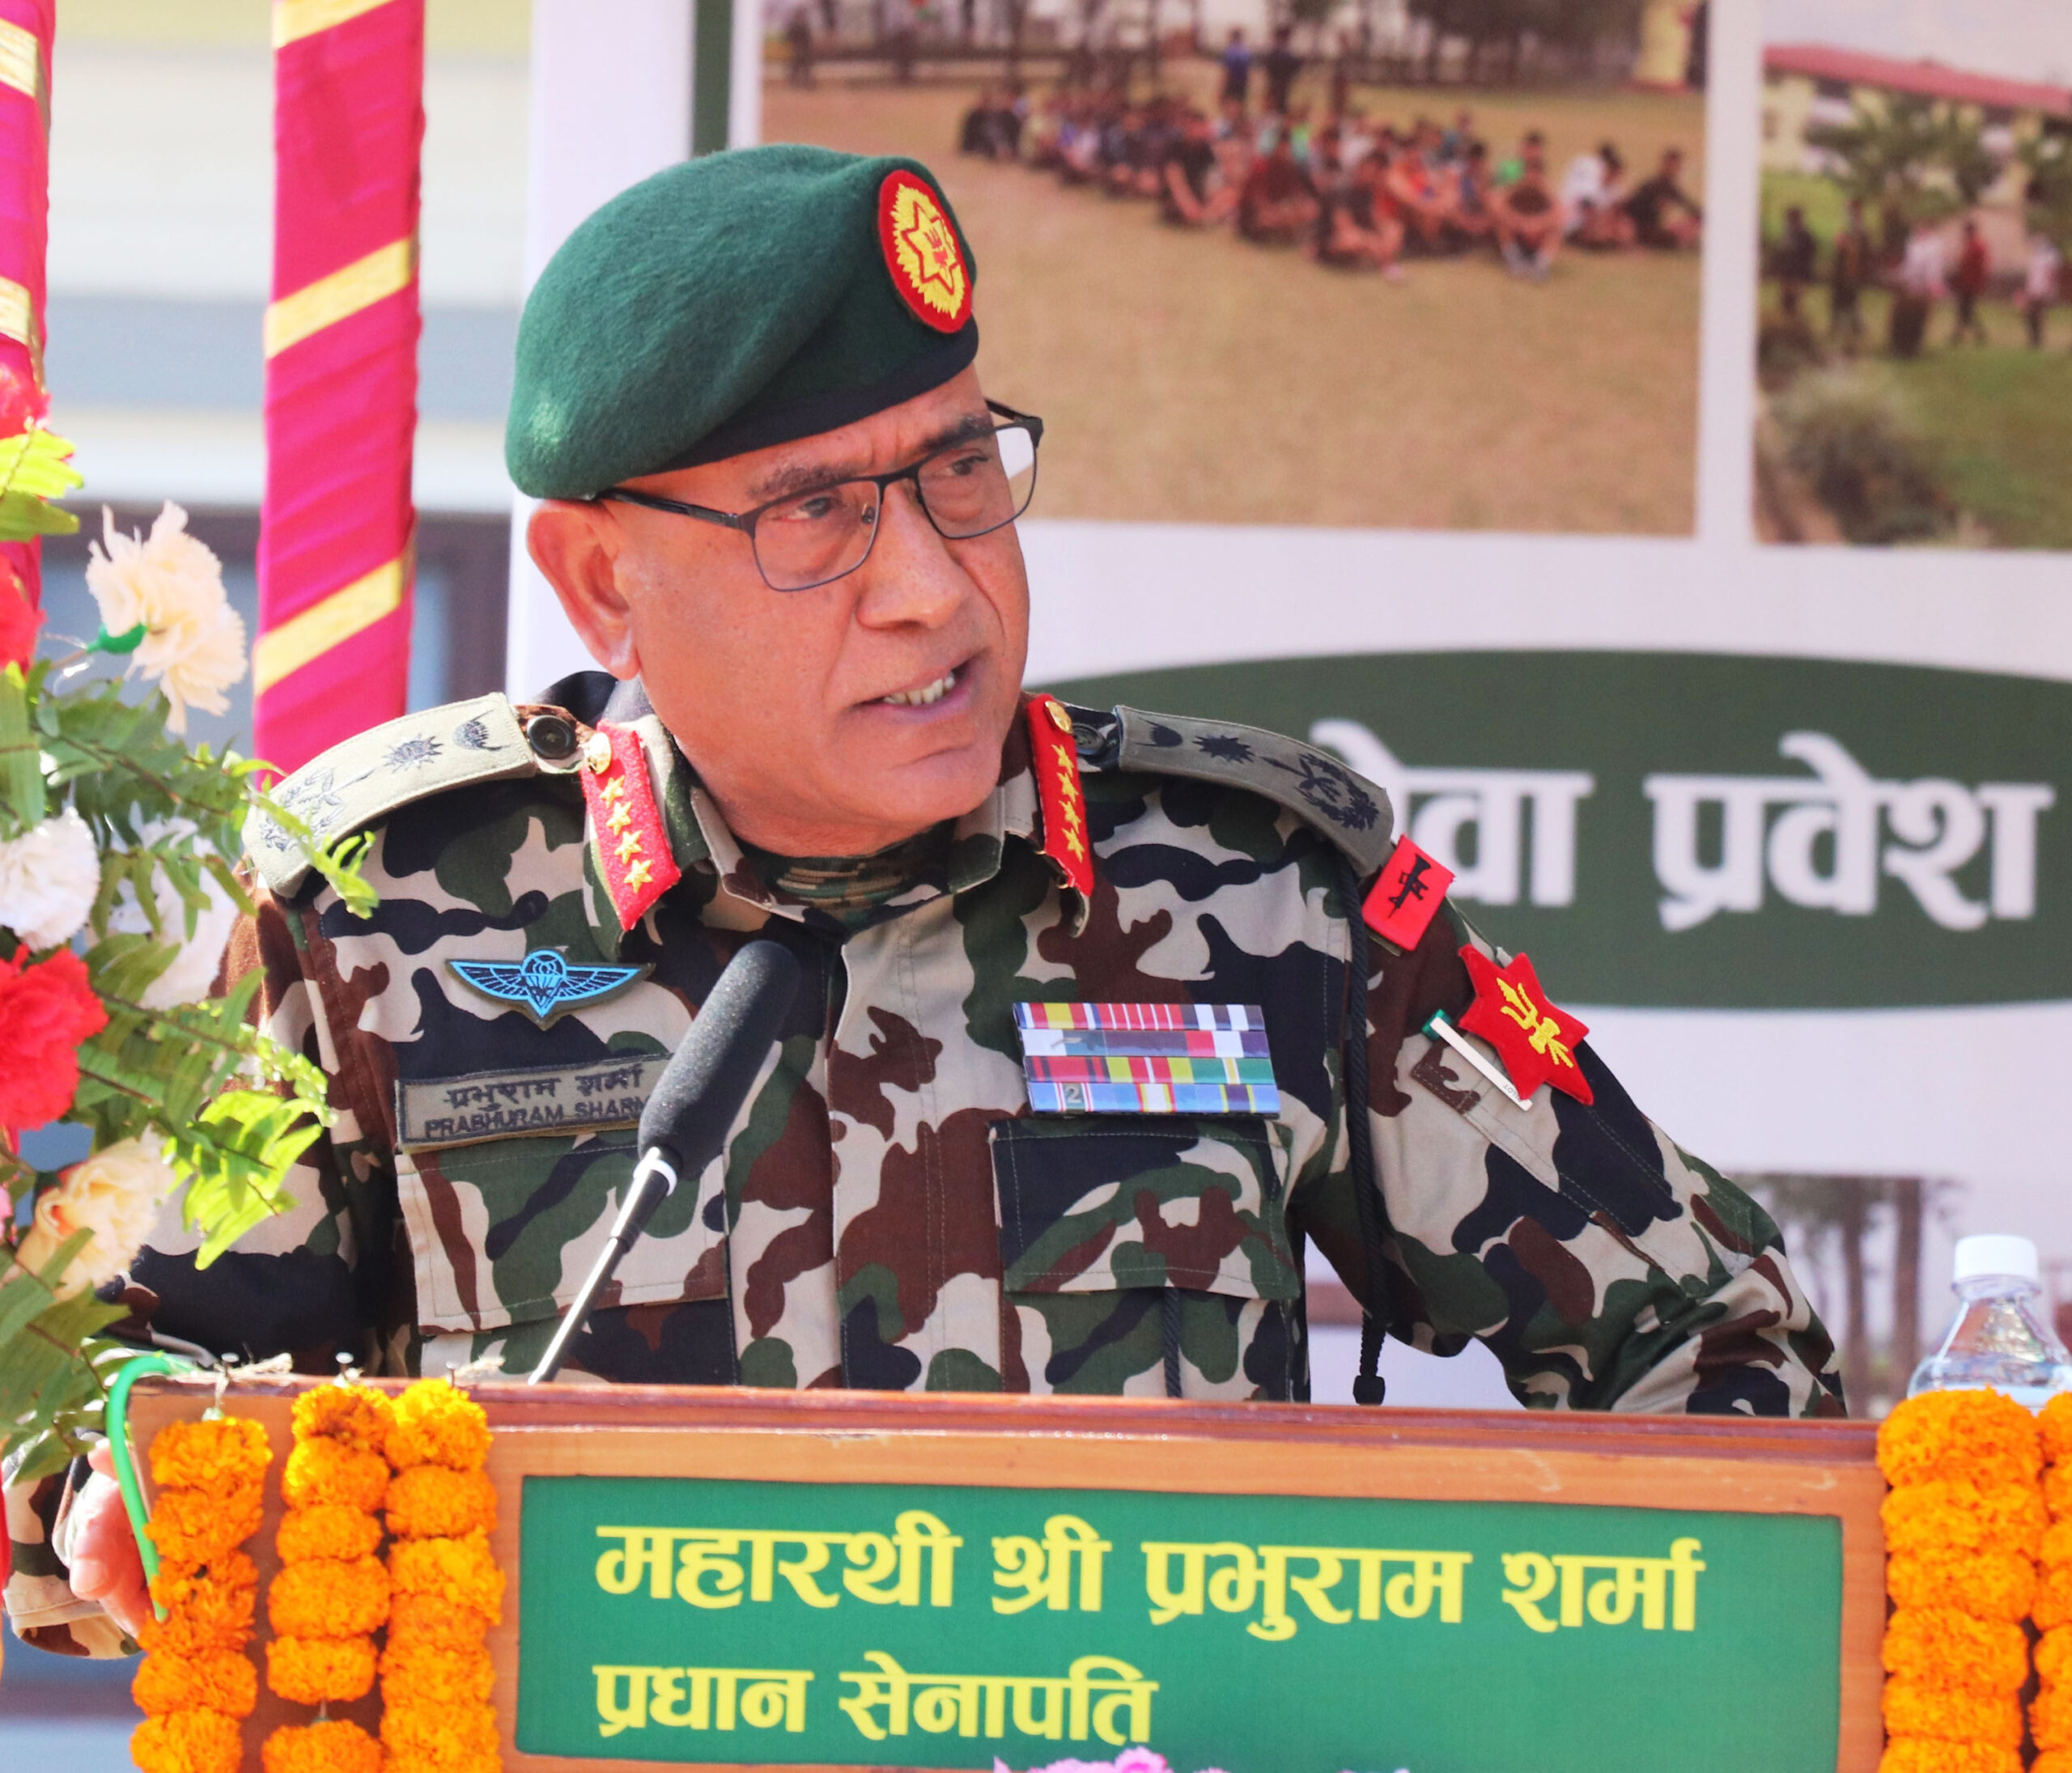 सेनाको सङ्ख्या नेपाल सरकारले निर्धारण गर्ने हो : प्रधानसेनापति शर्मा